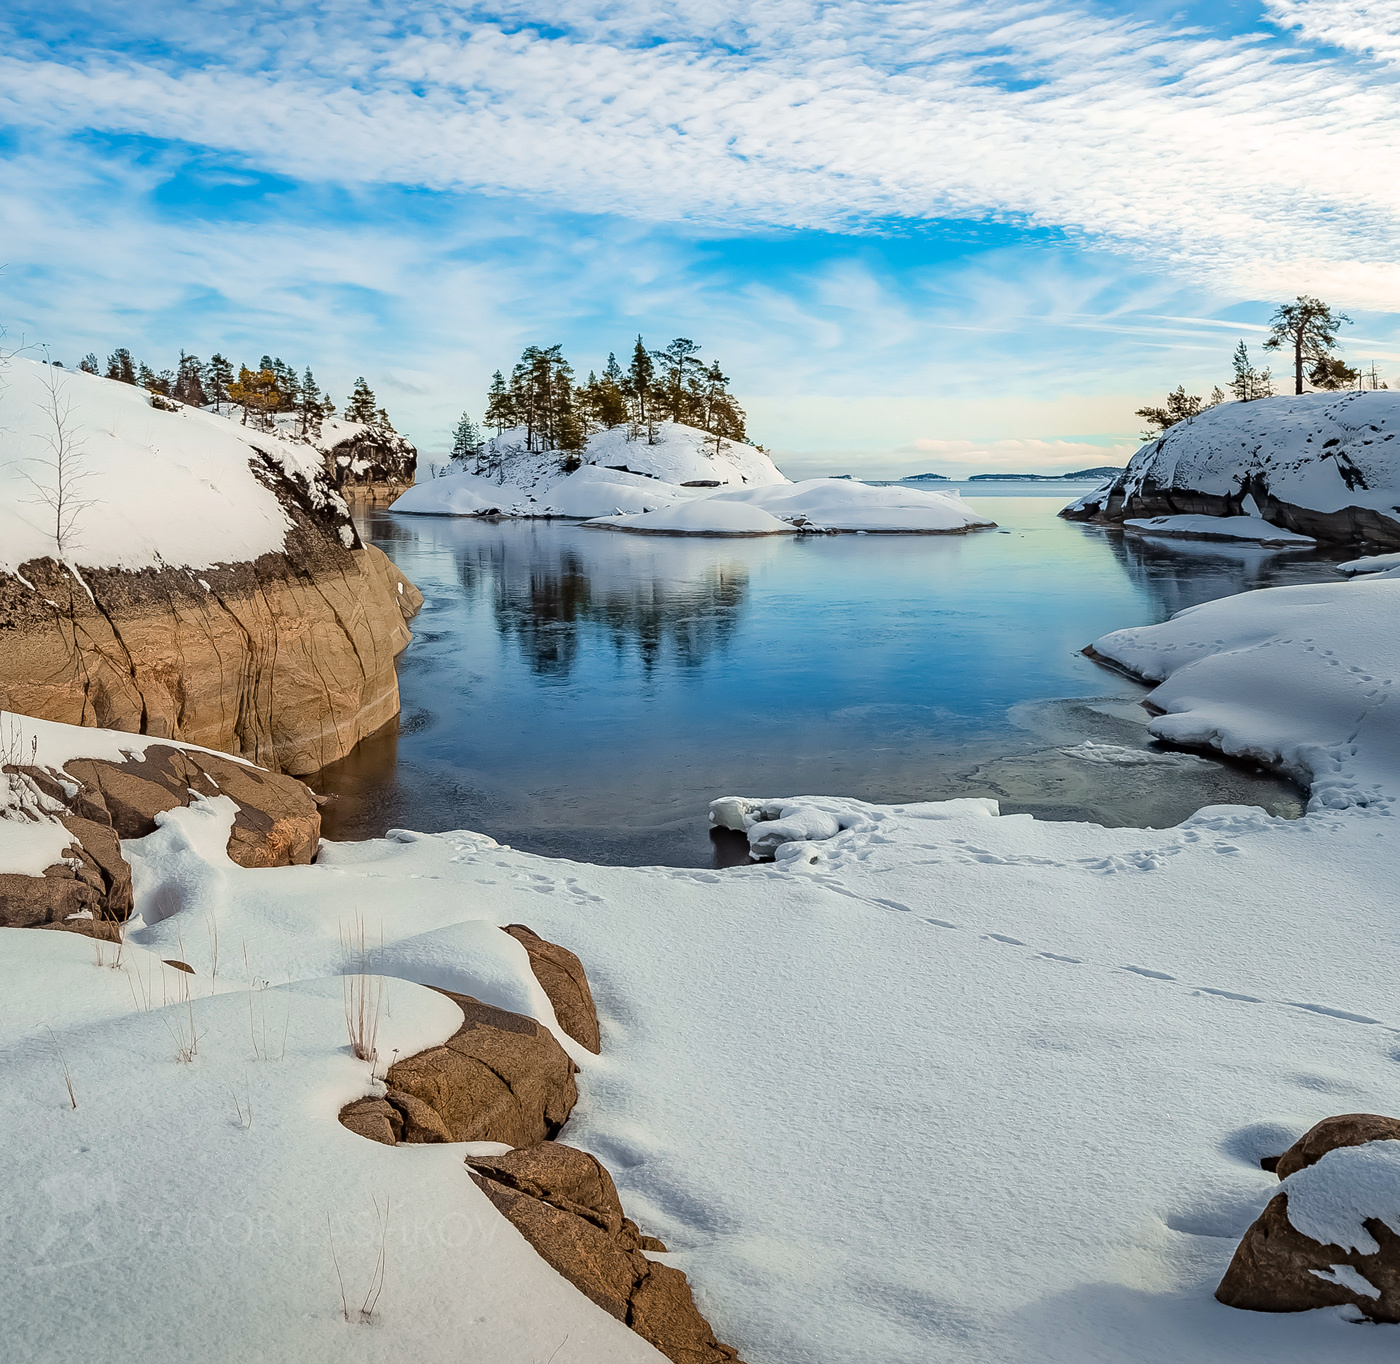 Зимний день на Ладоге Ладожское озеро Карелия зима день облака синий снег зимнее камни лёд отражение вода бухта залив остров сосны гранит шхеры